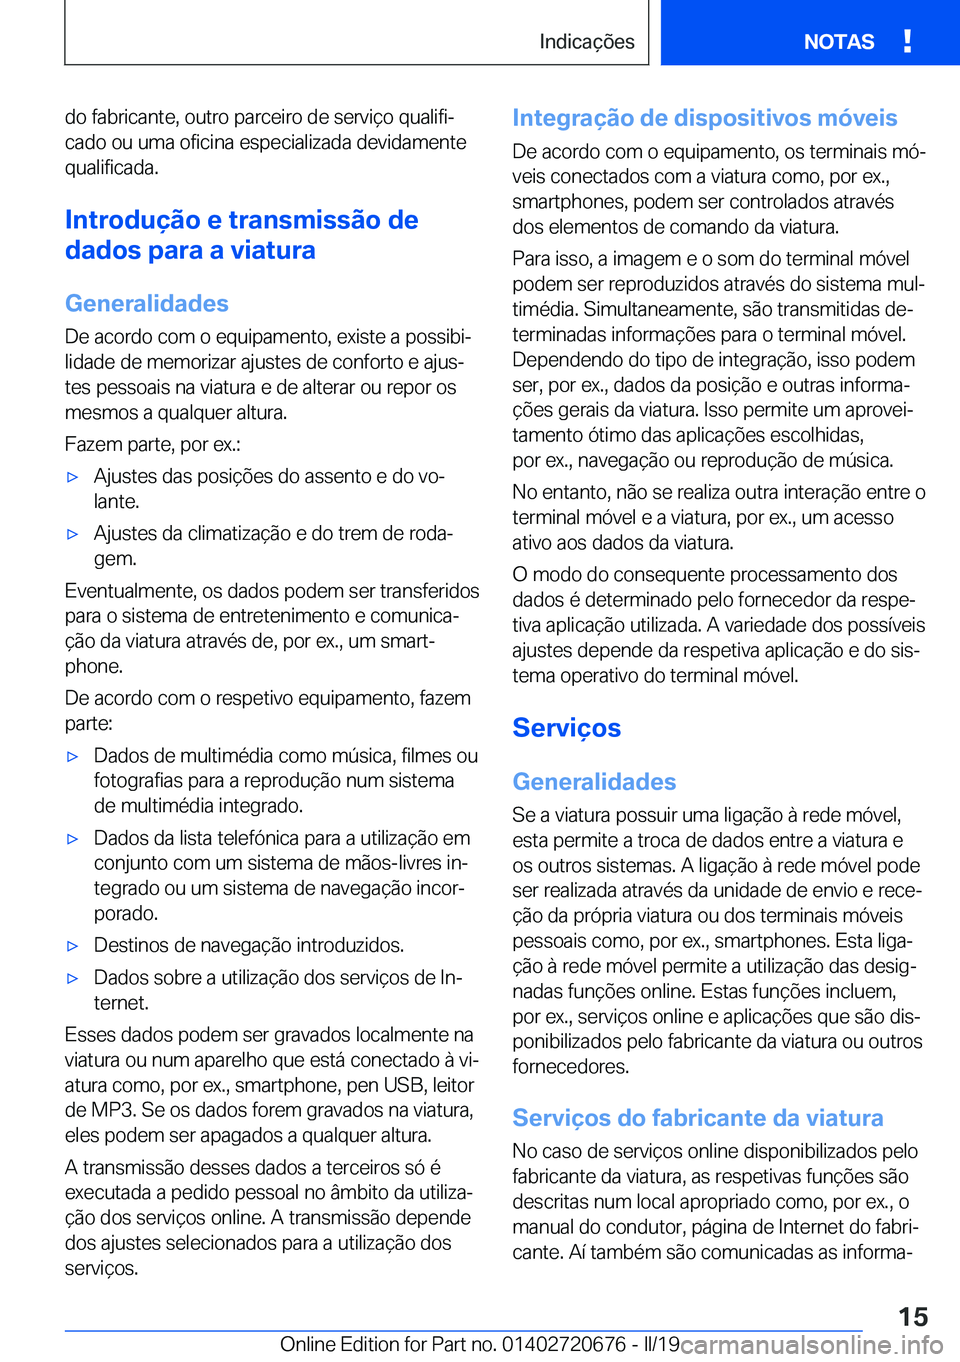 BMW M5 2019  Manual do condutor (in Portuguese) �d�o��f�a�b�r�i�c�a�n�t�e�,��o�u�t�r�o��p�a�r�c�e�i�r�o��d�e��s�e�r�v�i�